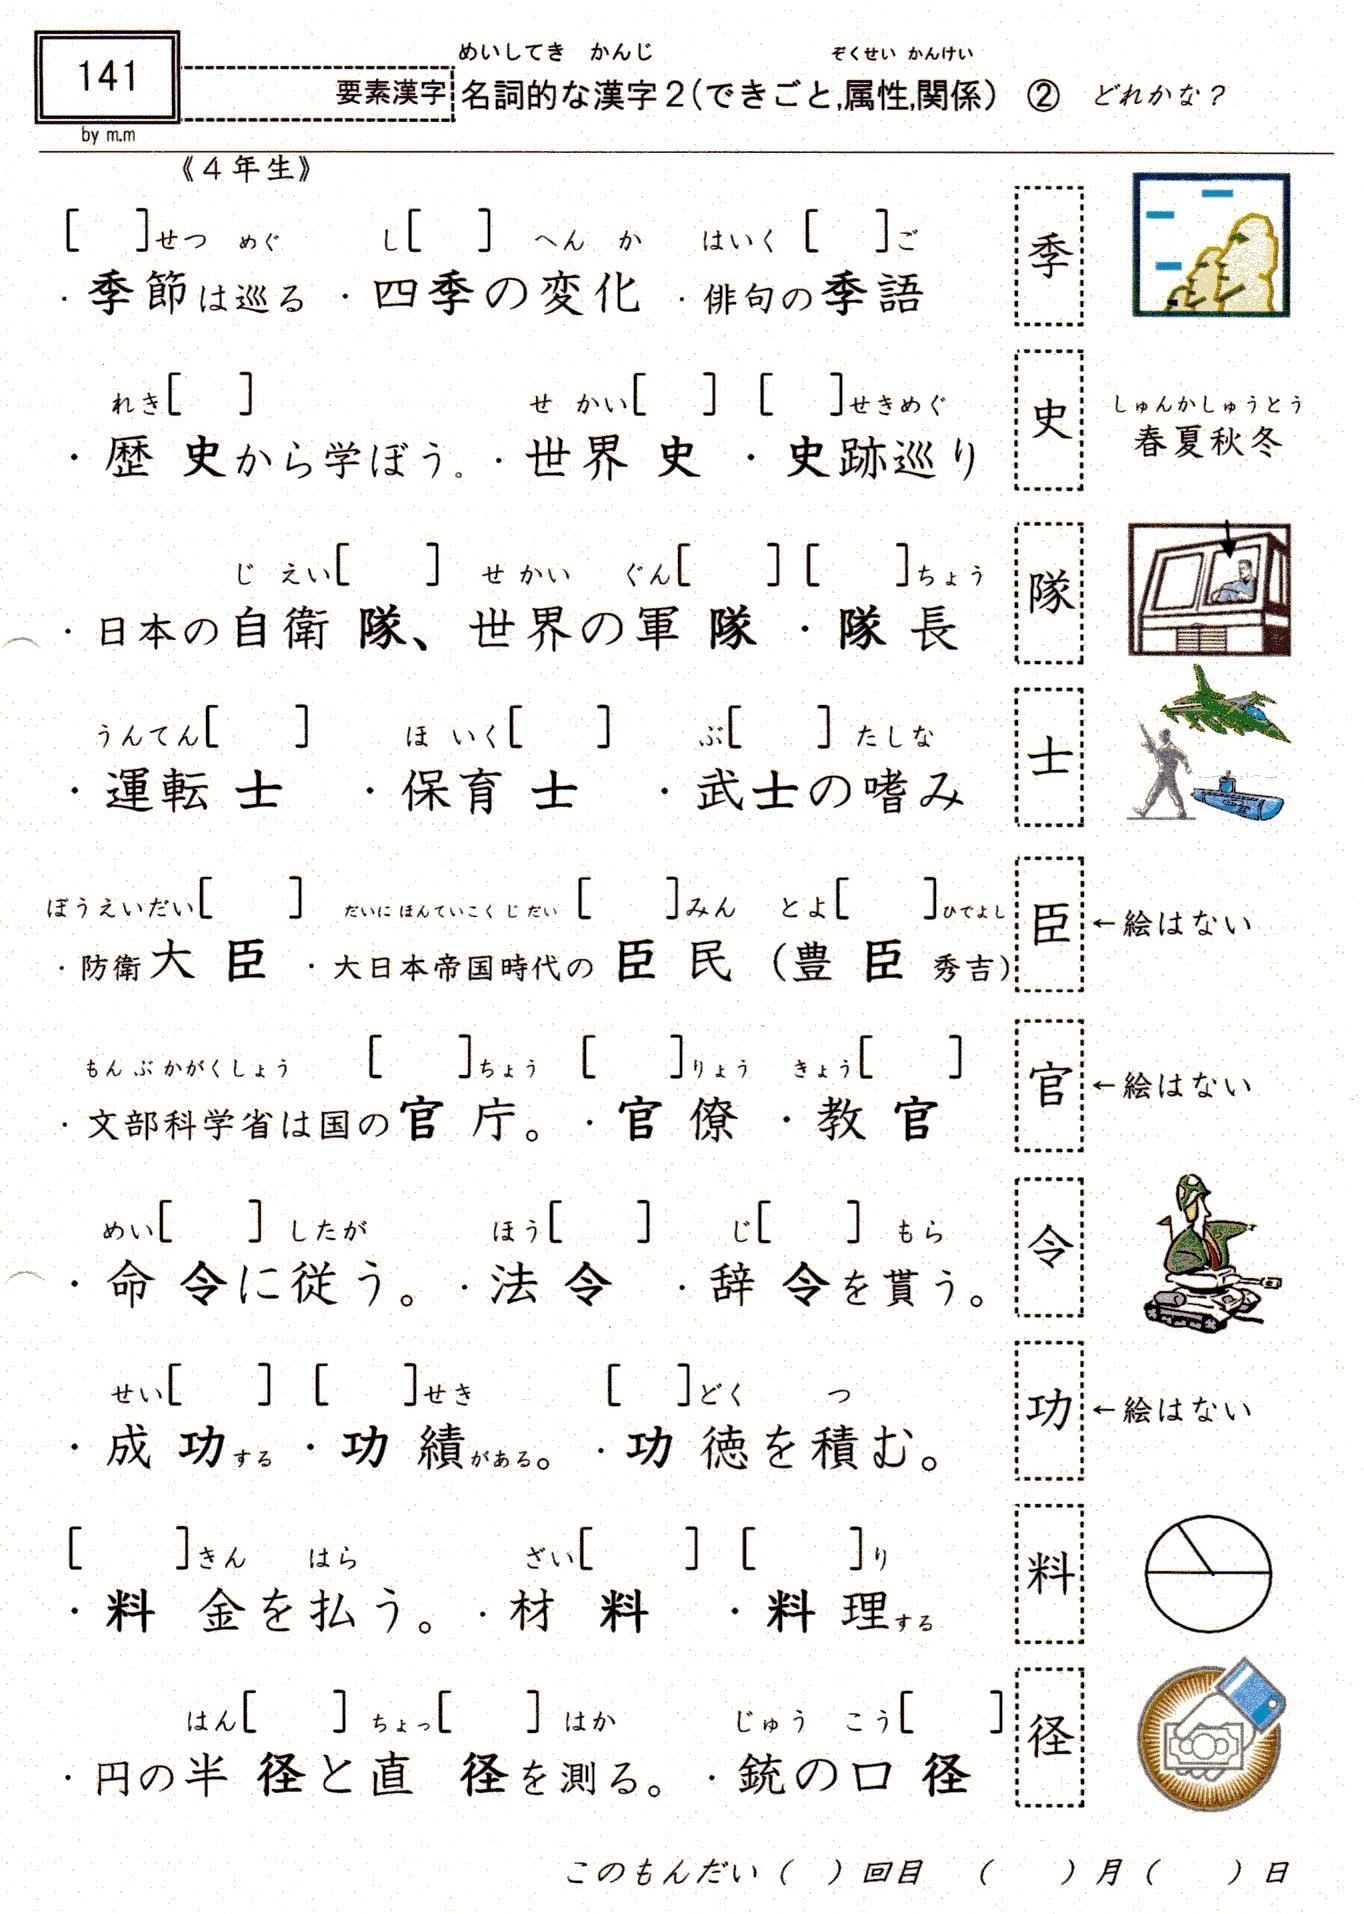 小学校漢字の読み 141 要素漢字 名詞的な漢字２ できごと 属性 関係 4年 残りは19枚 やおよろずの神々の棲む国で